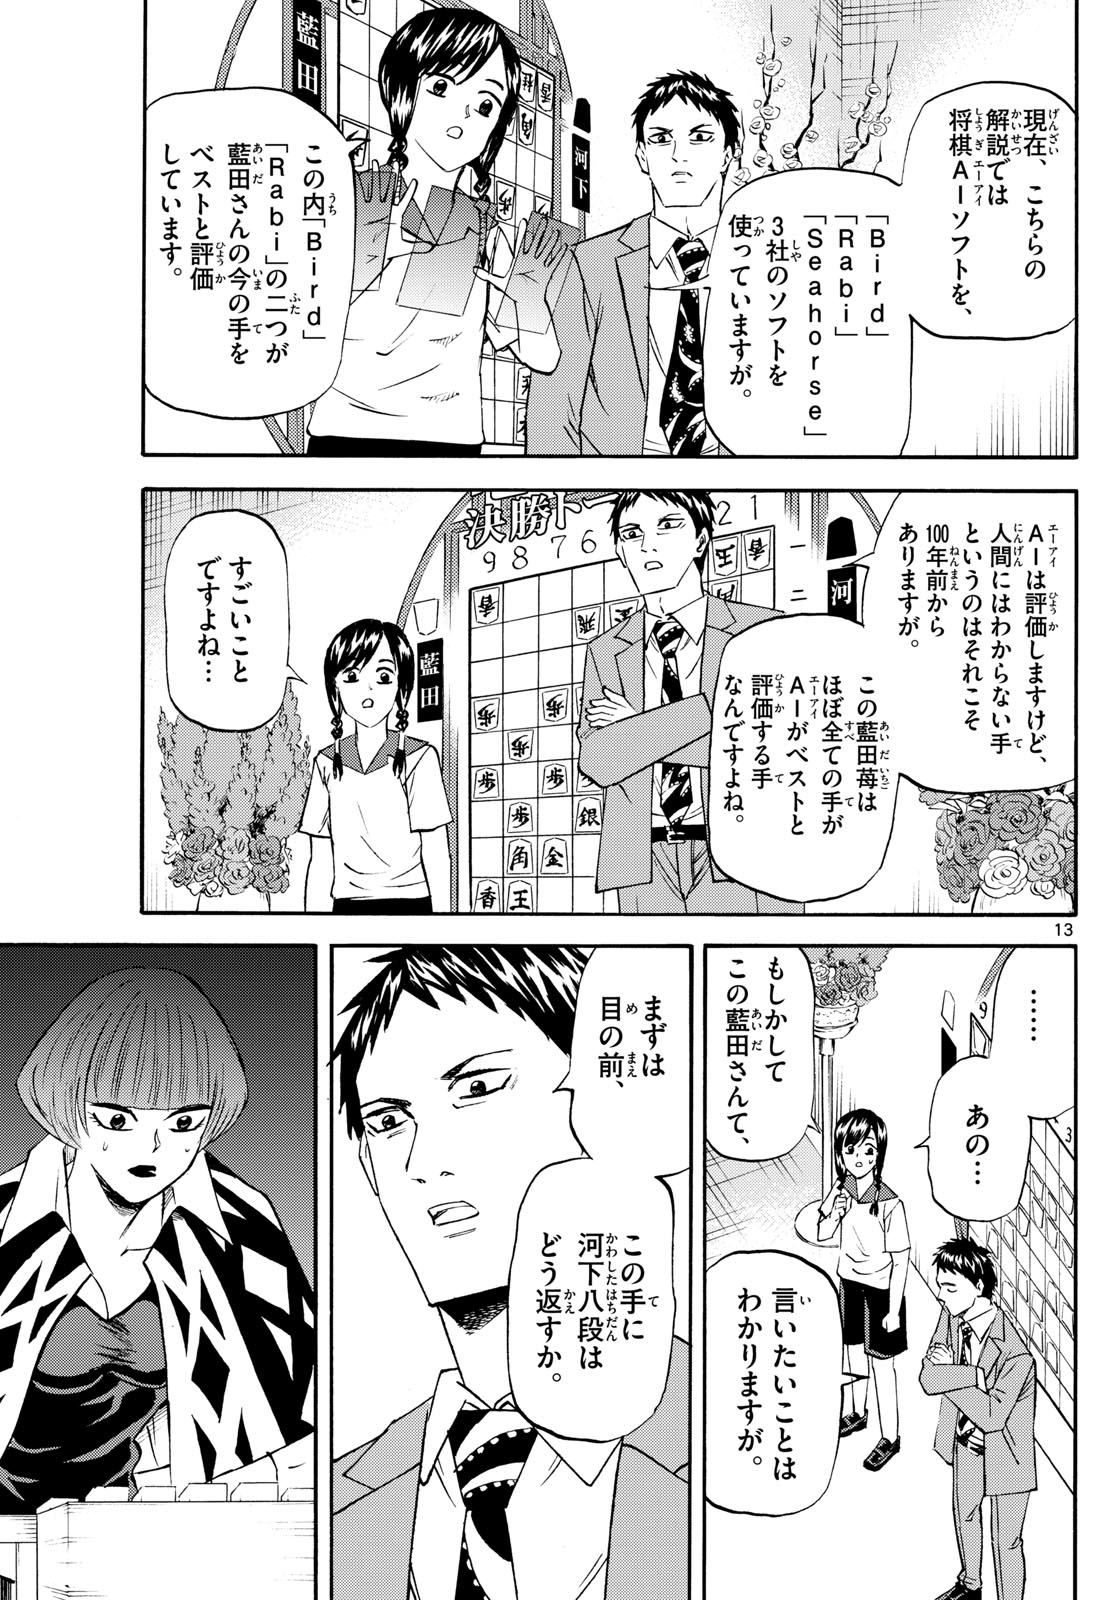 Tatsu to Ichigo - Chapter 200 - Page 13